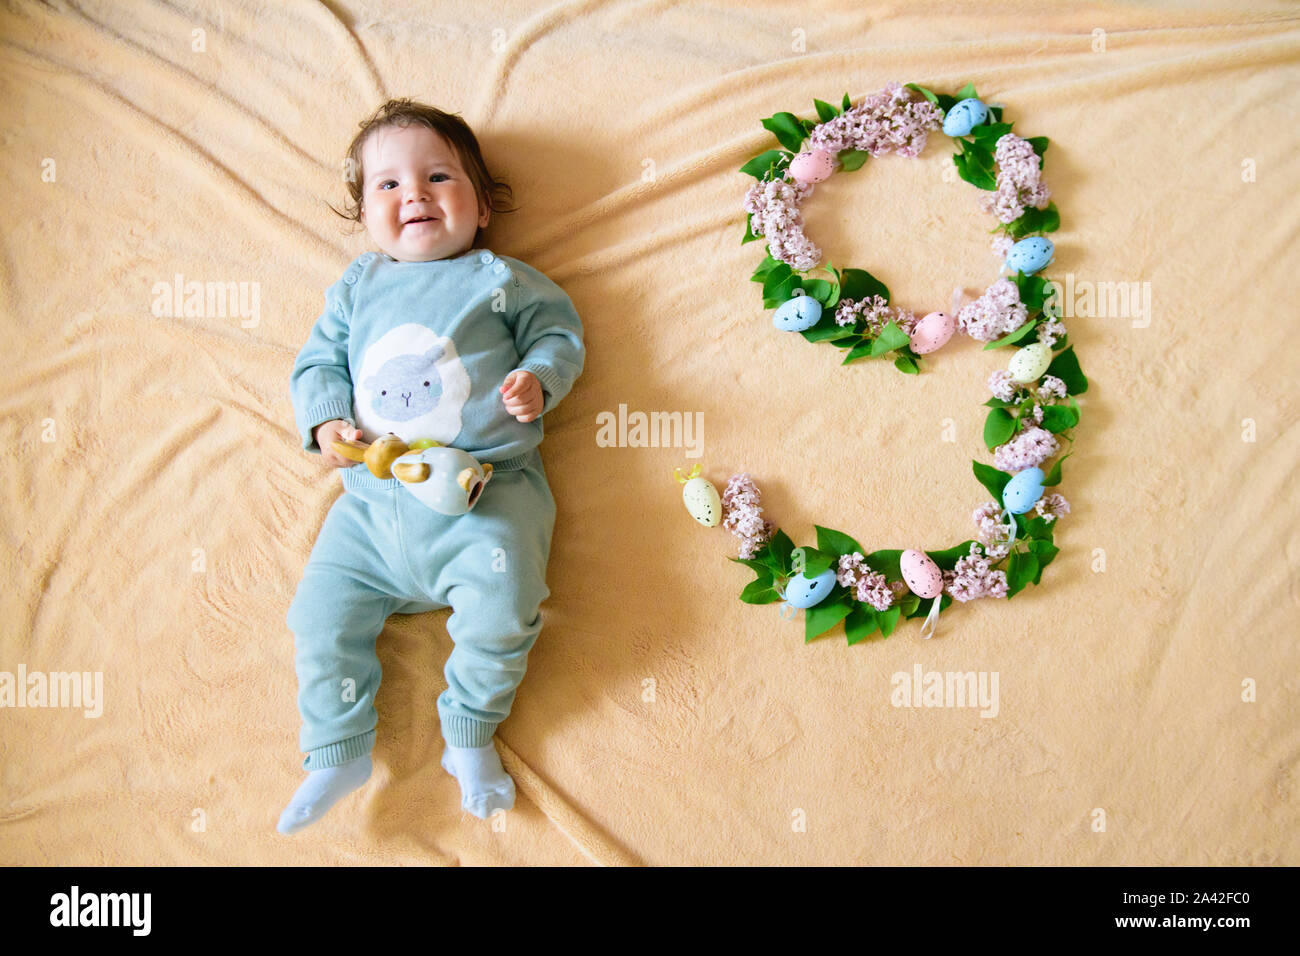 9 mesi immagini e fotografie stock ad alta risoluzione - Alamy